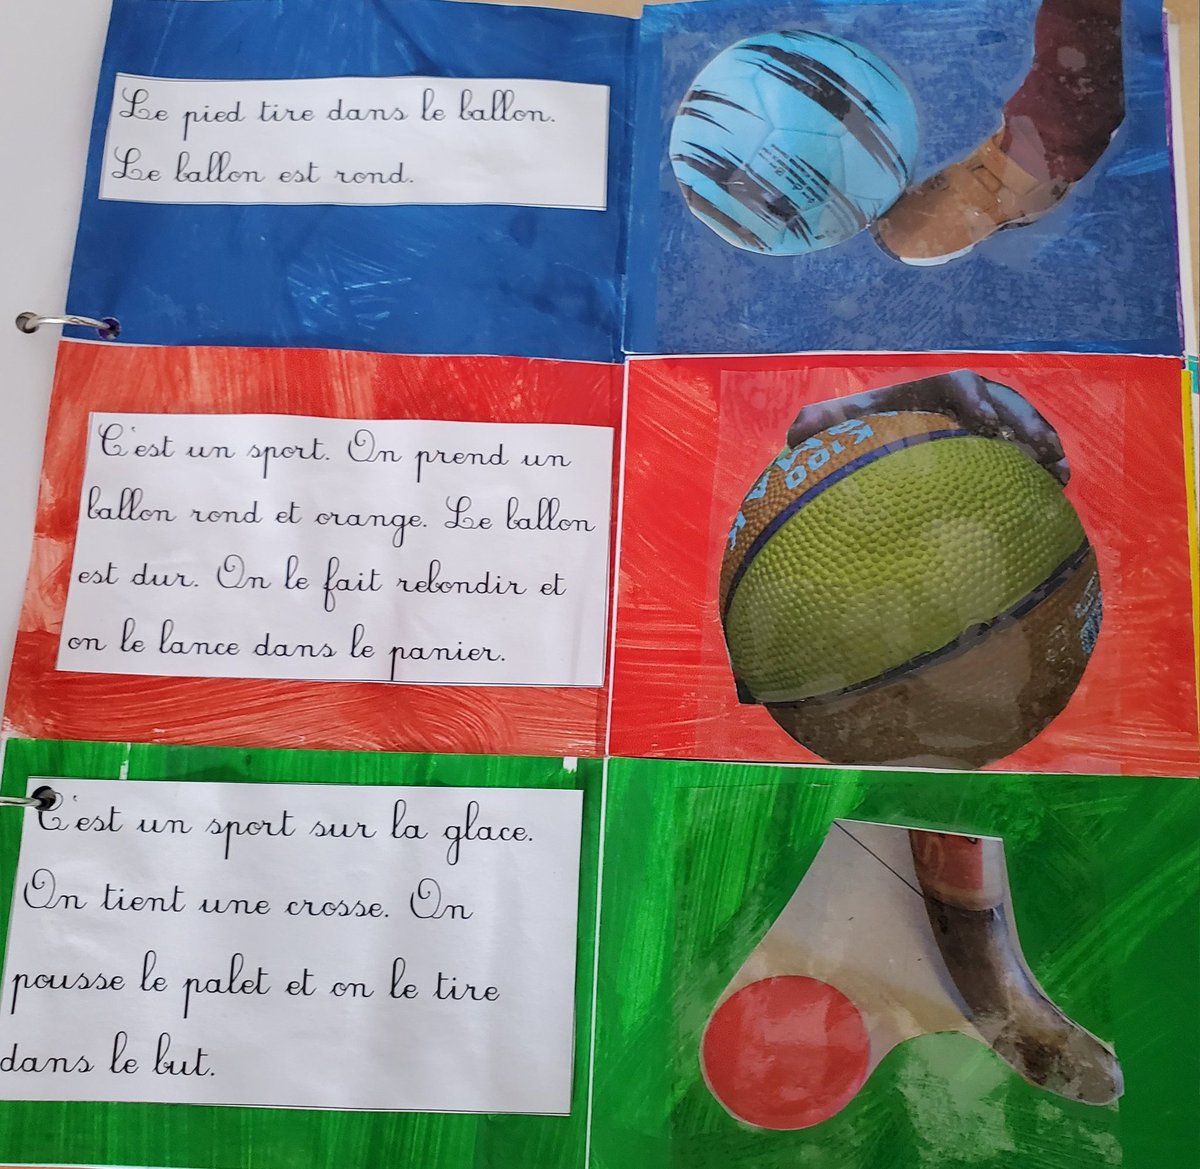 Un extrait de notre livre de devinettes sur le sport à la manière d'Alain Crozon.
Un gros travail en dictée à l'adulte avec les élèves. 
#JO2024 
@generation2024 
@brousse_claire
#arts #langage
#salondulivre2024